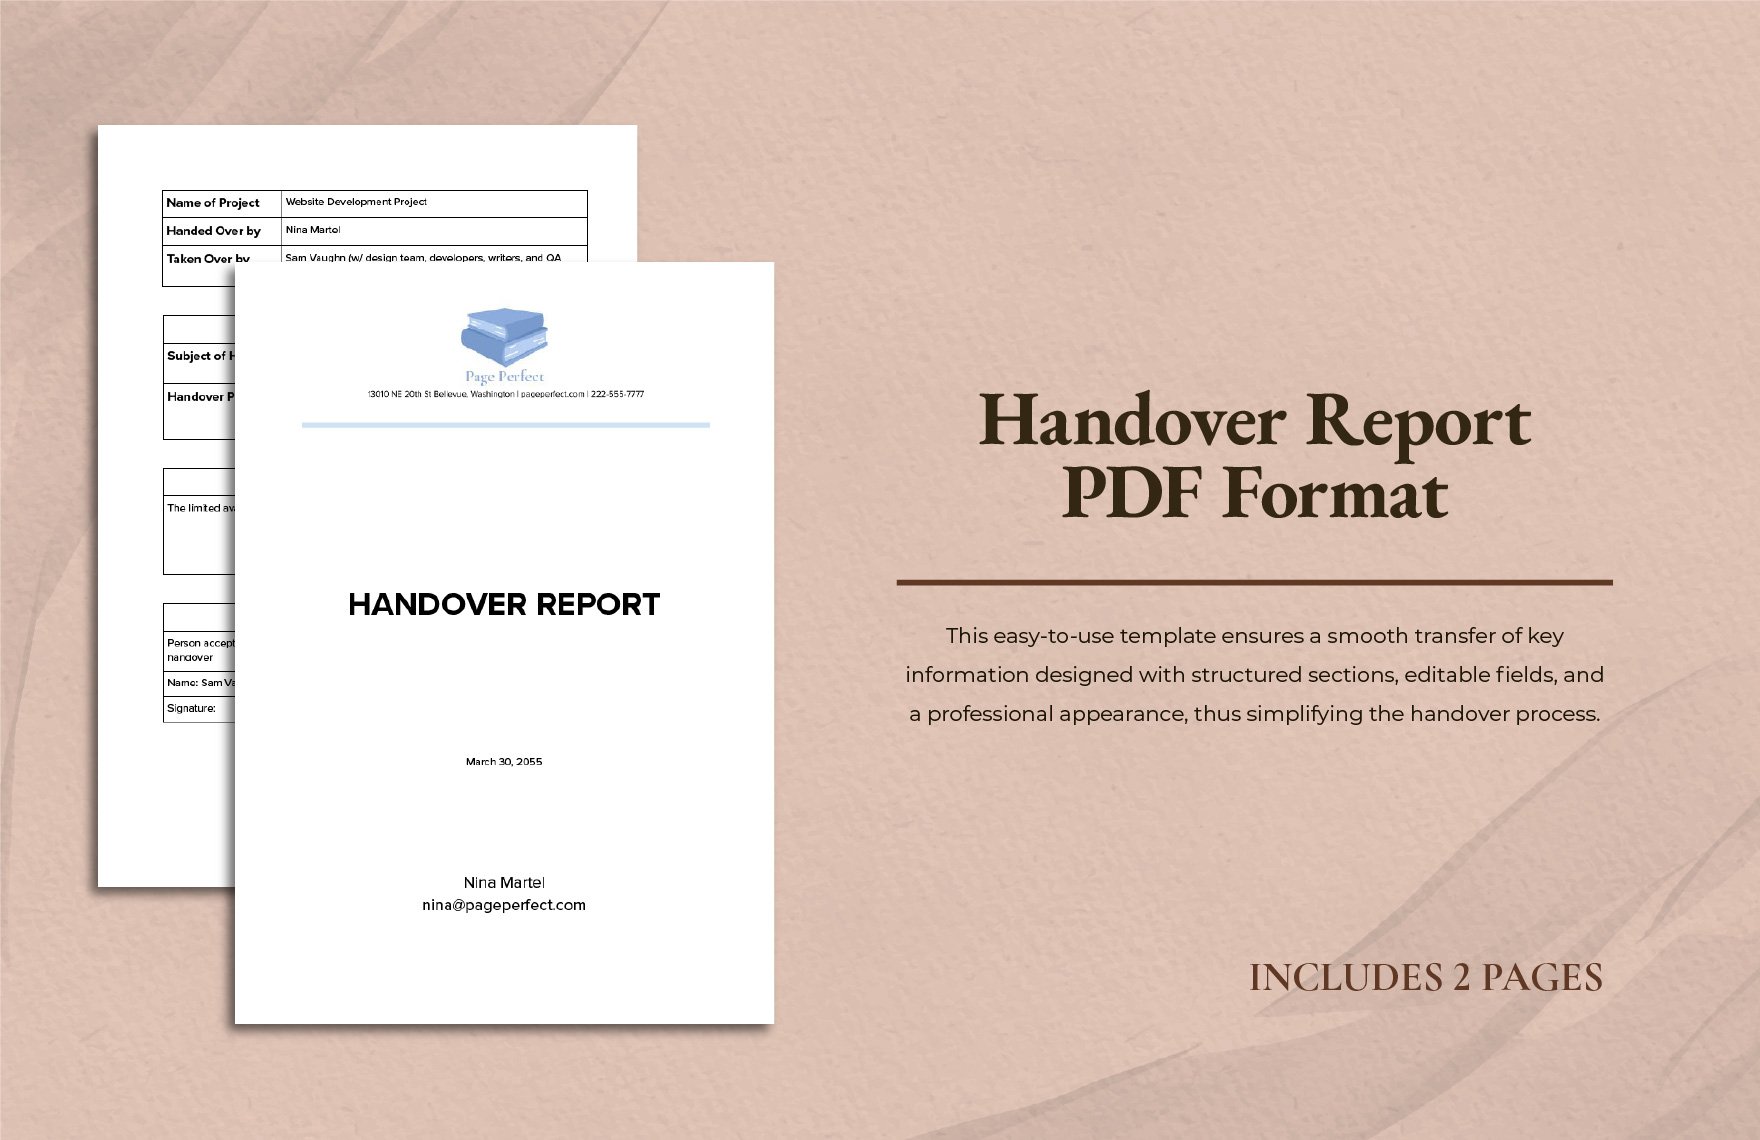 Handover Report PDF Format in Word, Google Docs